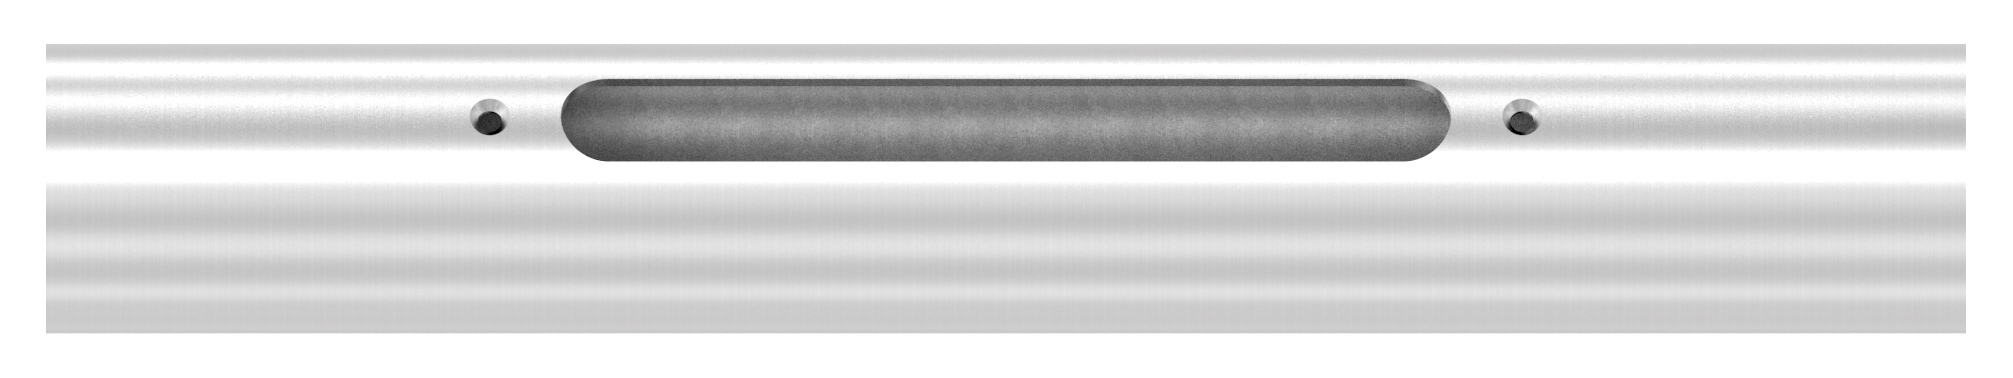 Edelstahlrohr 42,4 x 2,0mm für LED Module